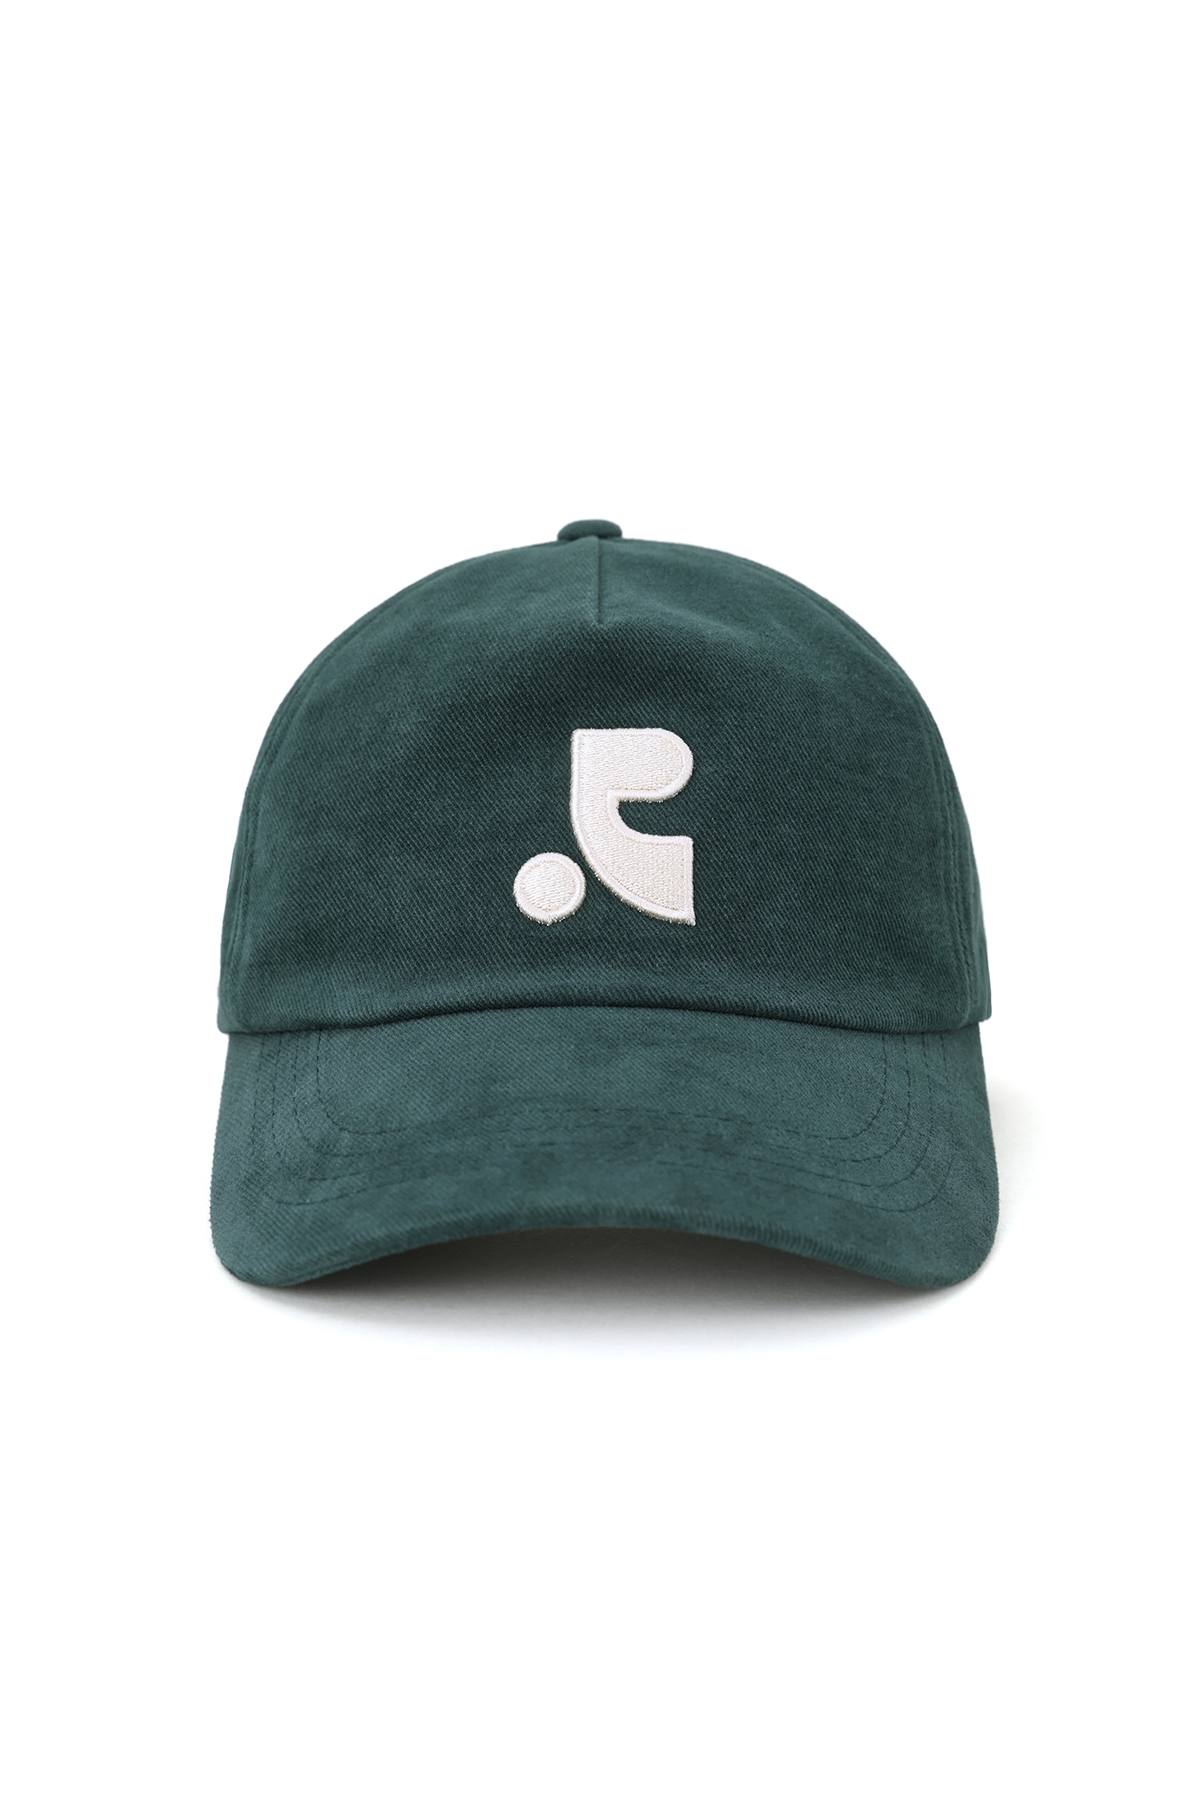 RR LOGO BALL CAP - GREEN